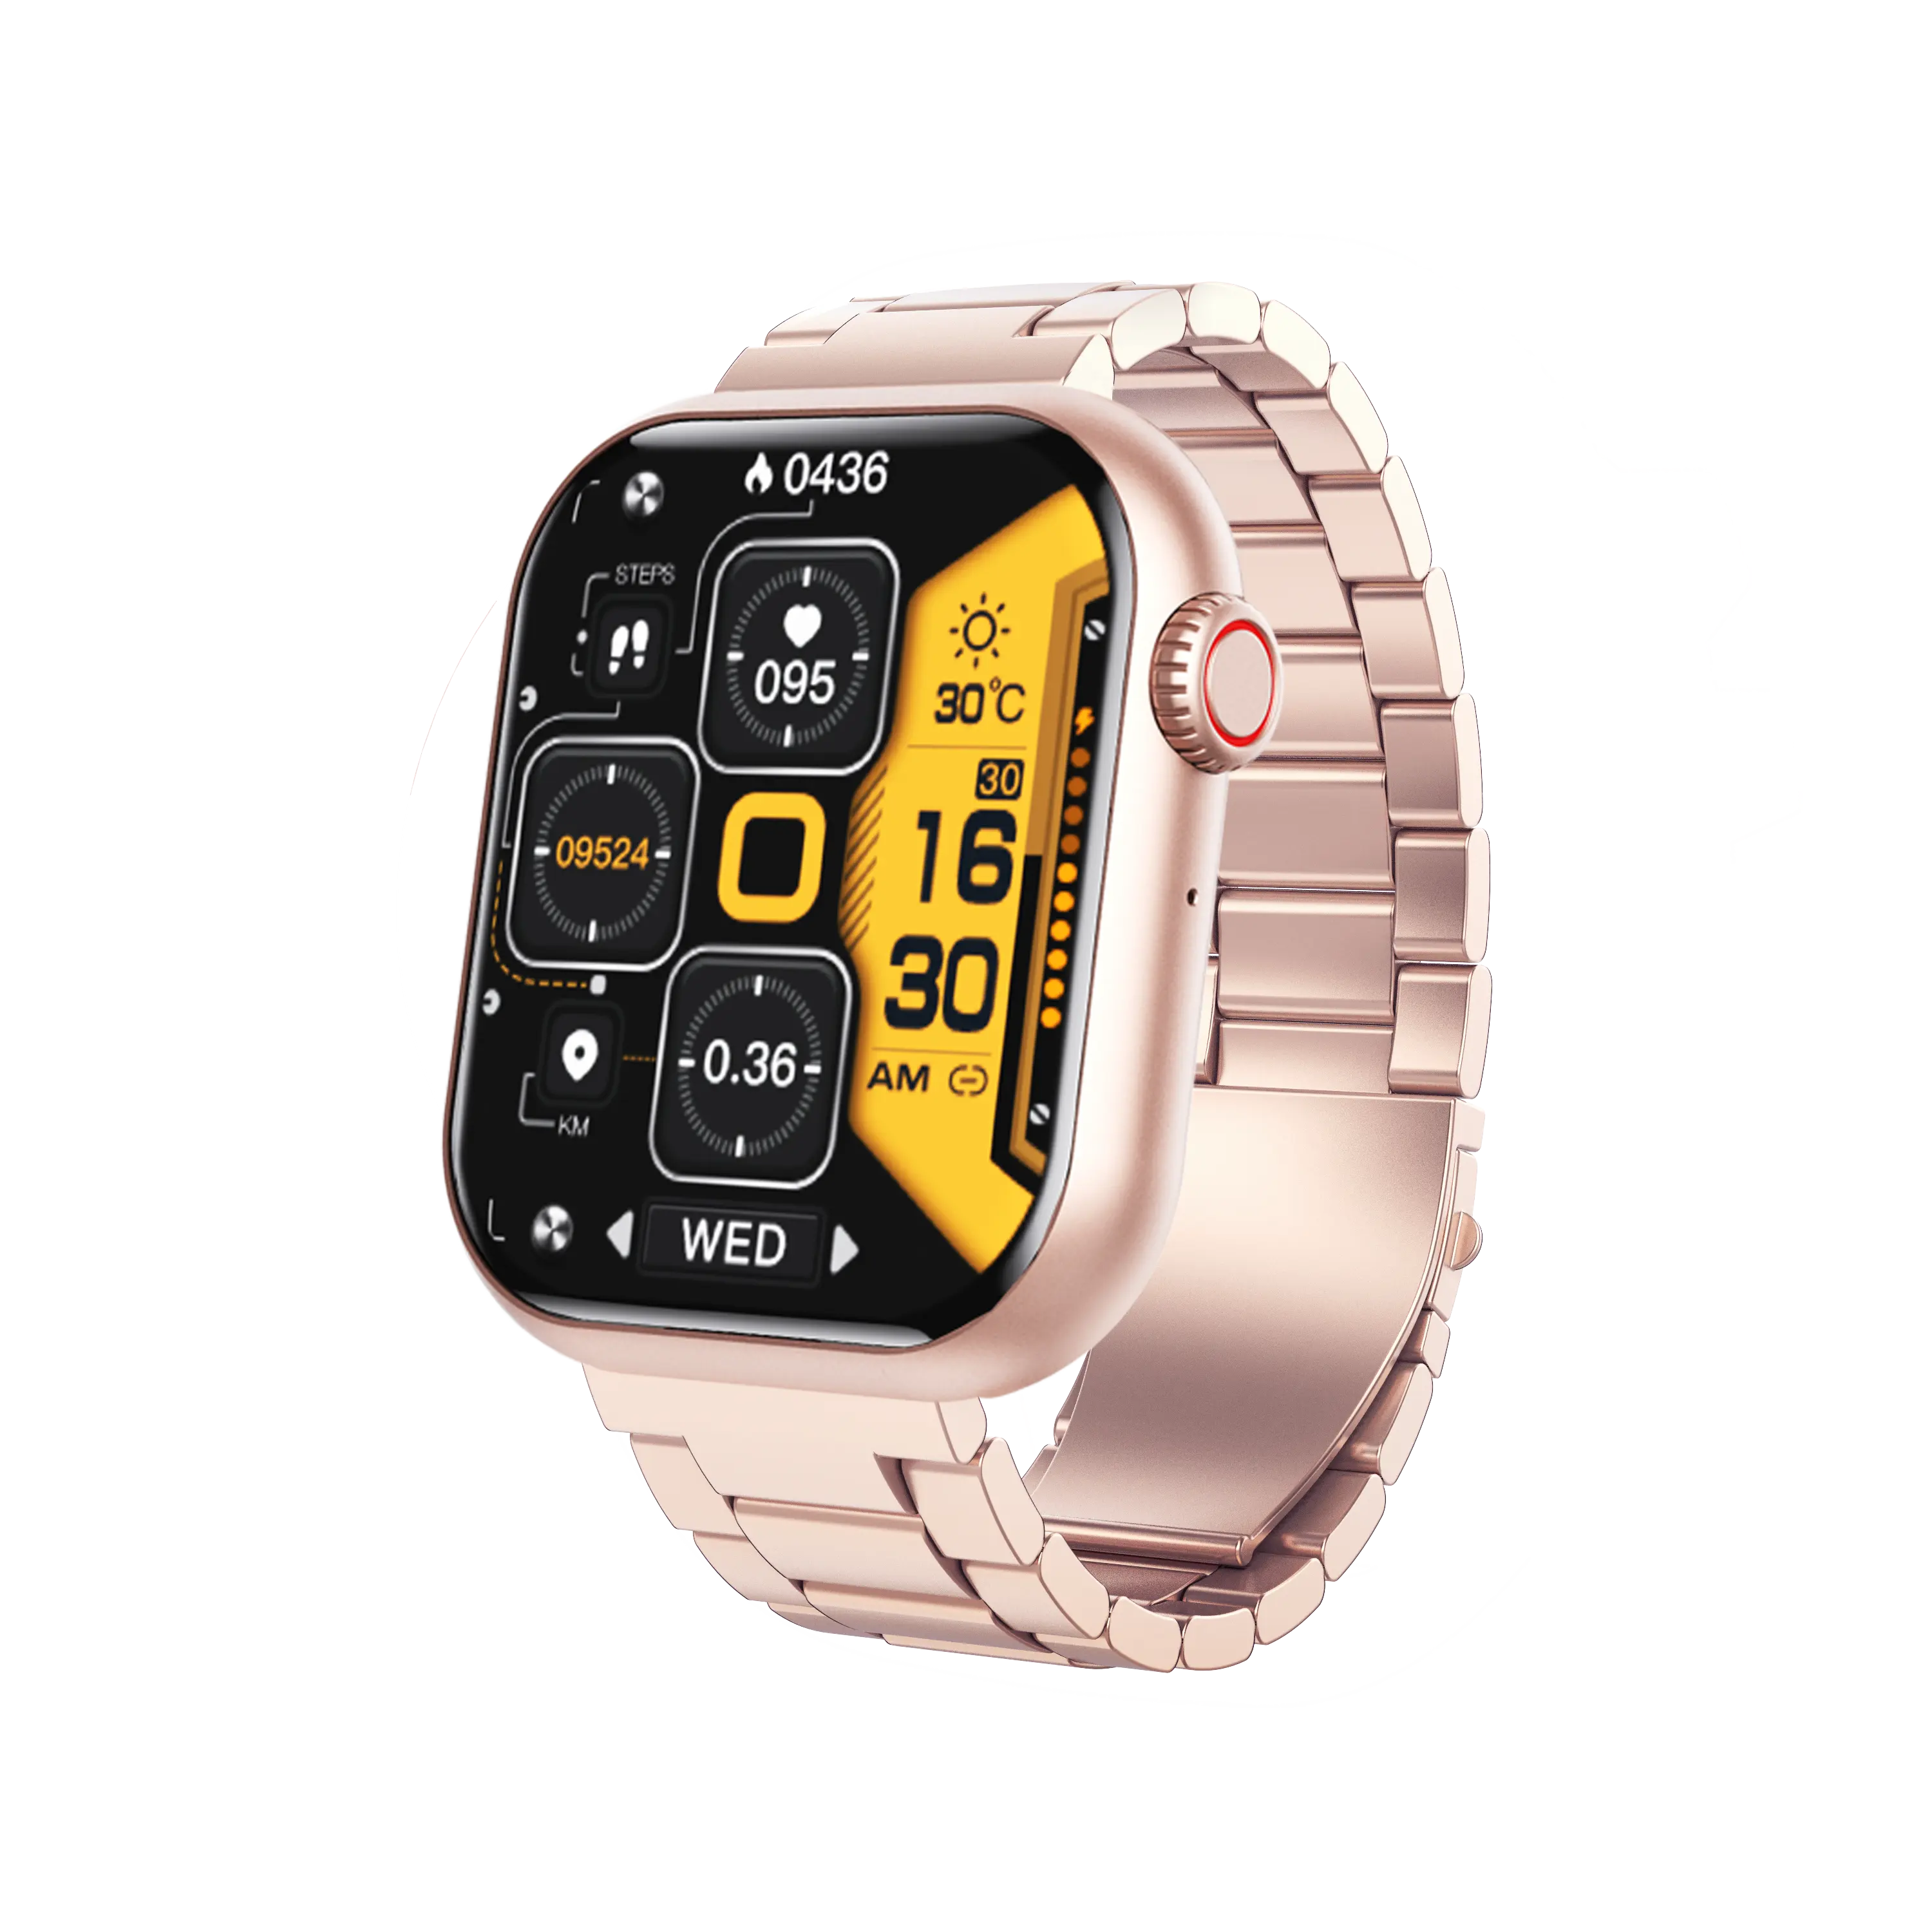 Jam tangan pintar olahraga telepon seluler android ios murah layar tampilan Amoled dengan panggilan bt jam tangan pintar untuk pria wanita